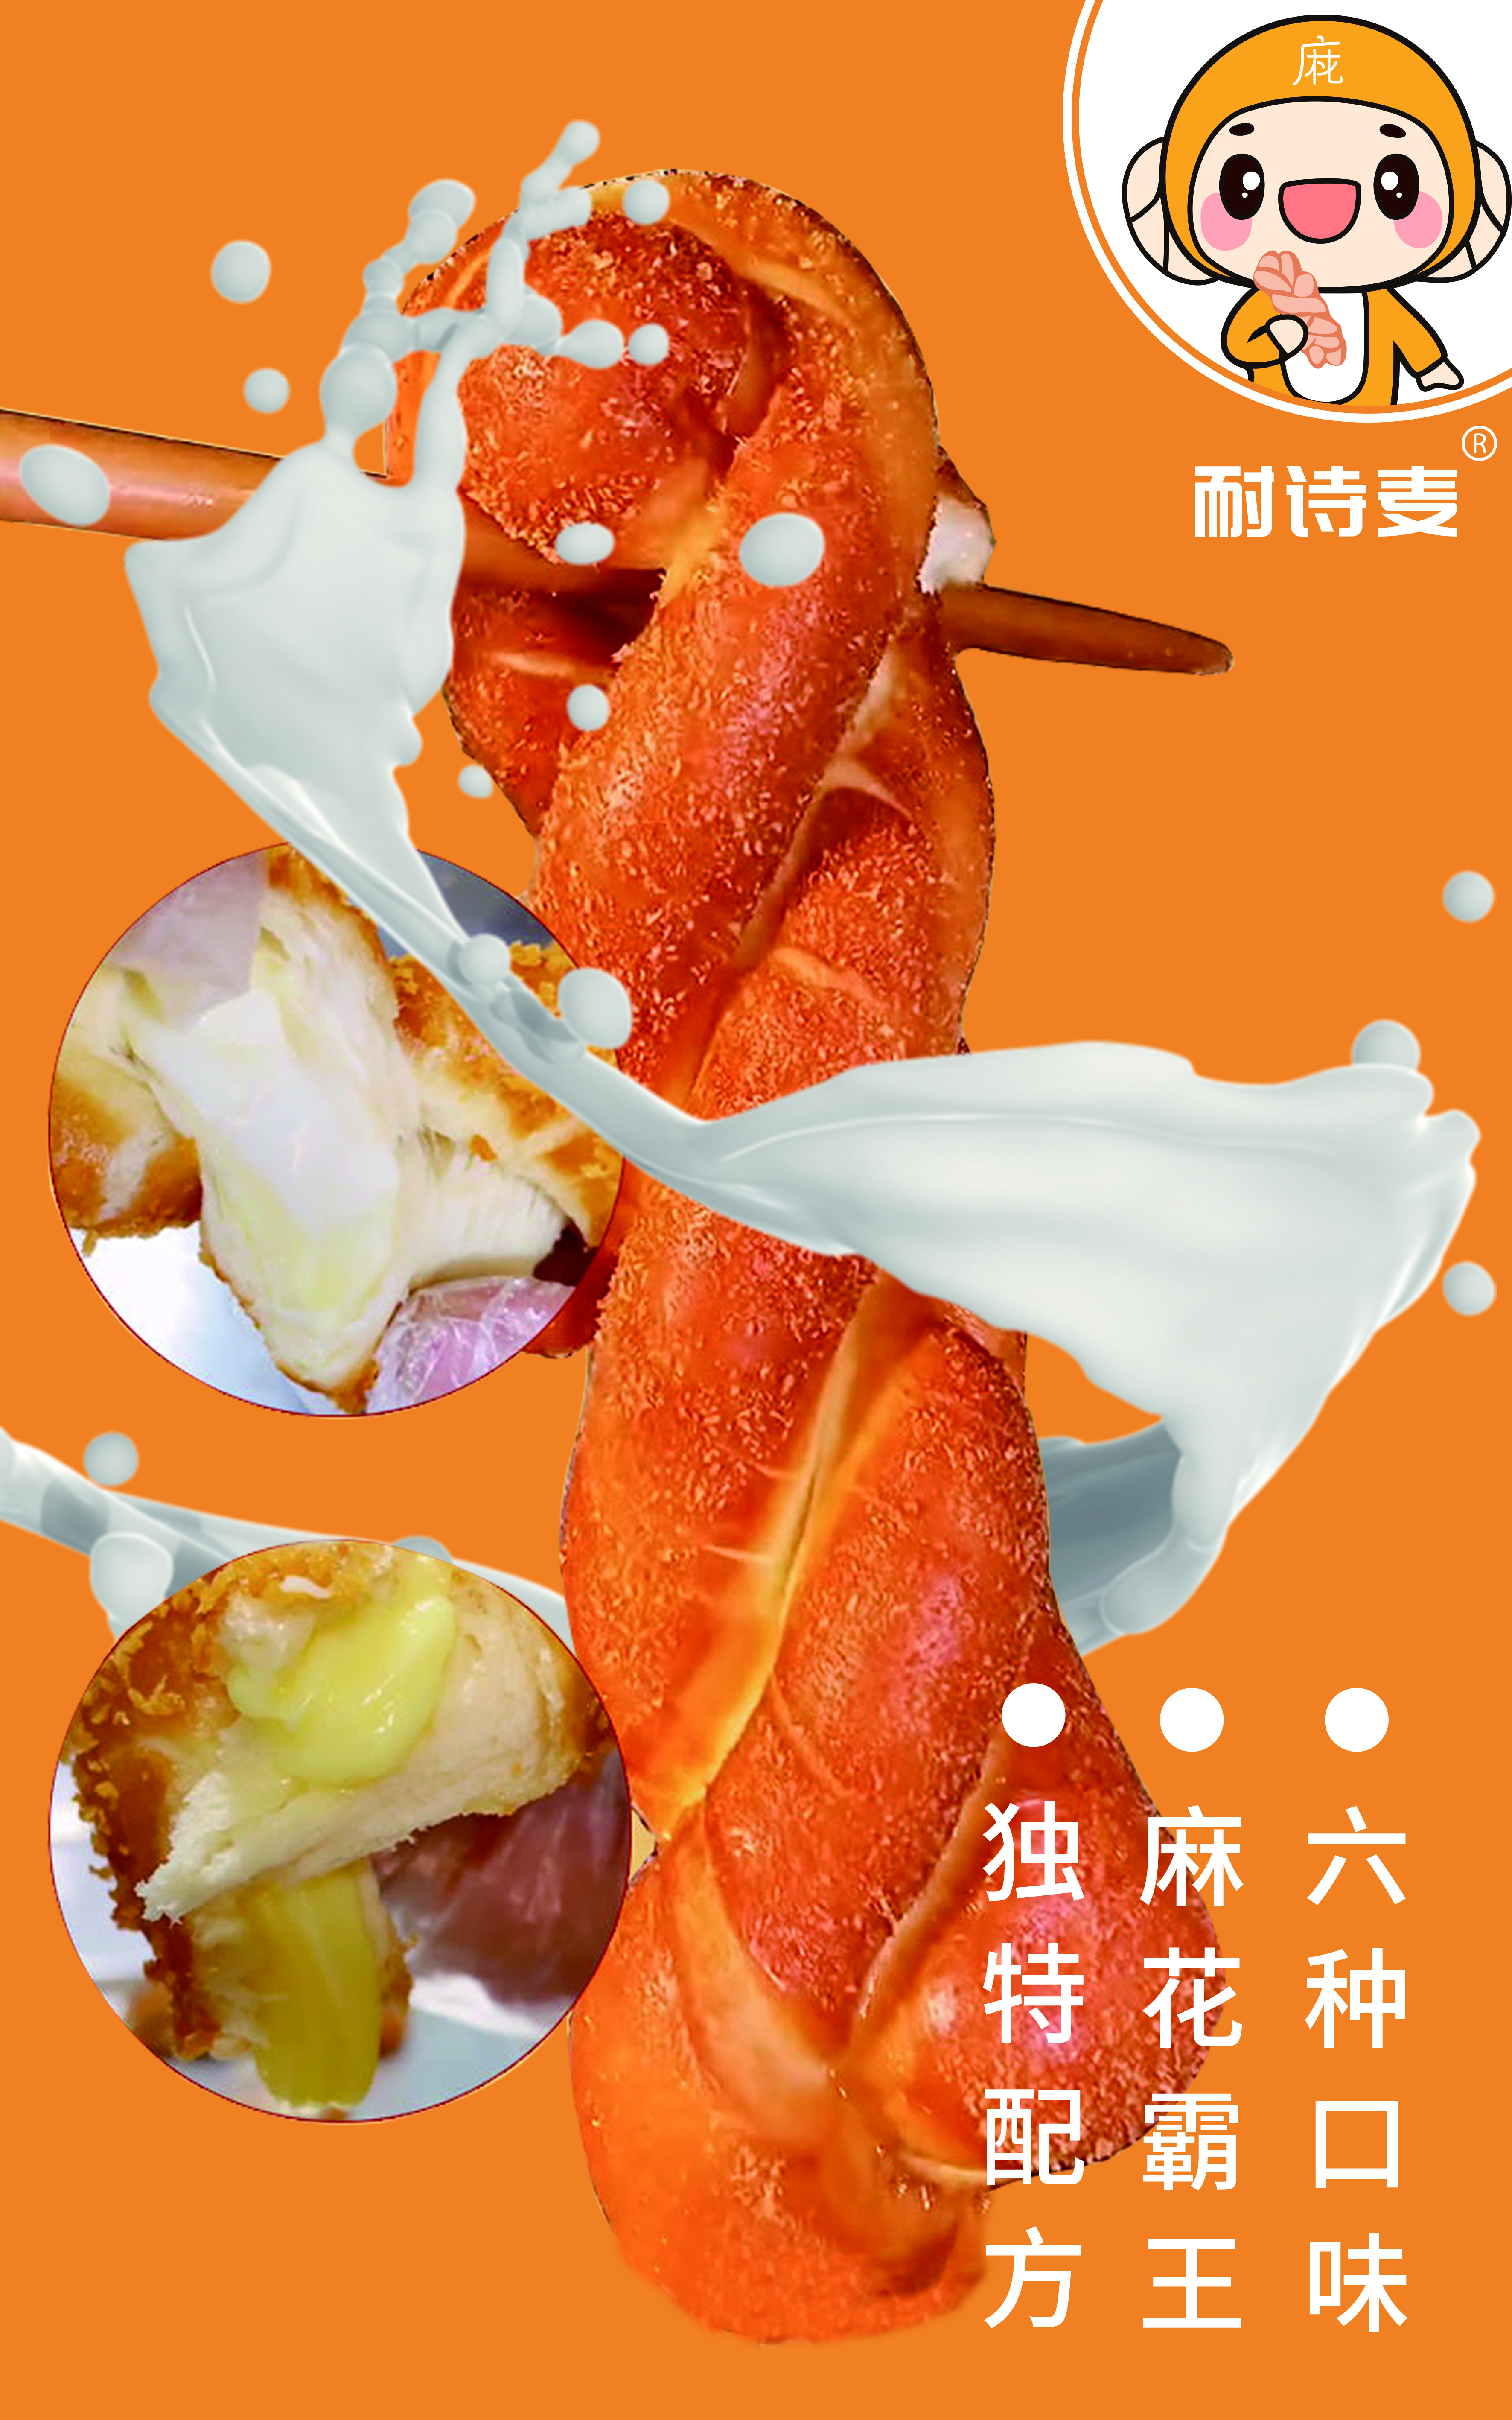 爆浆酸奶麻花广告牌图片